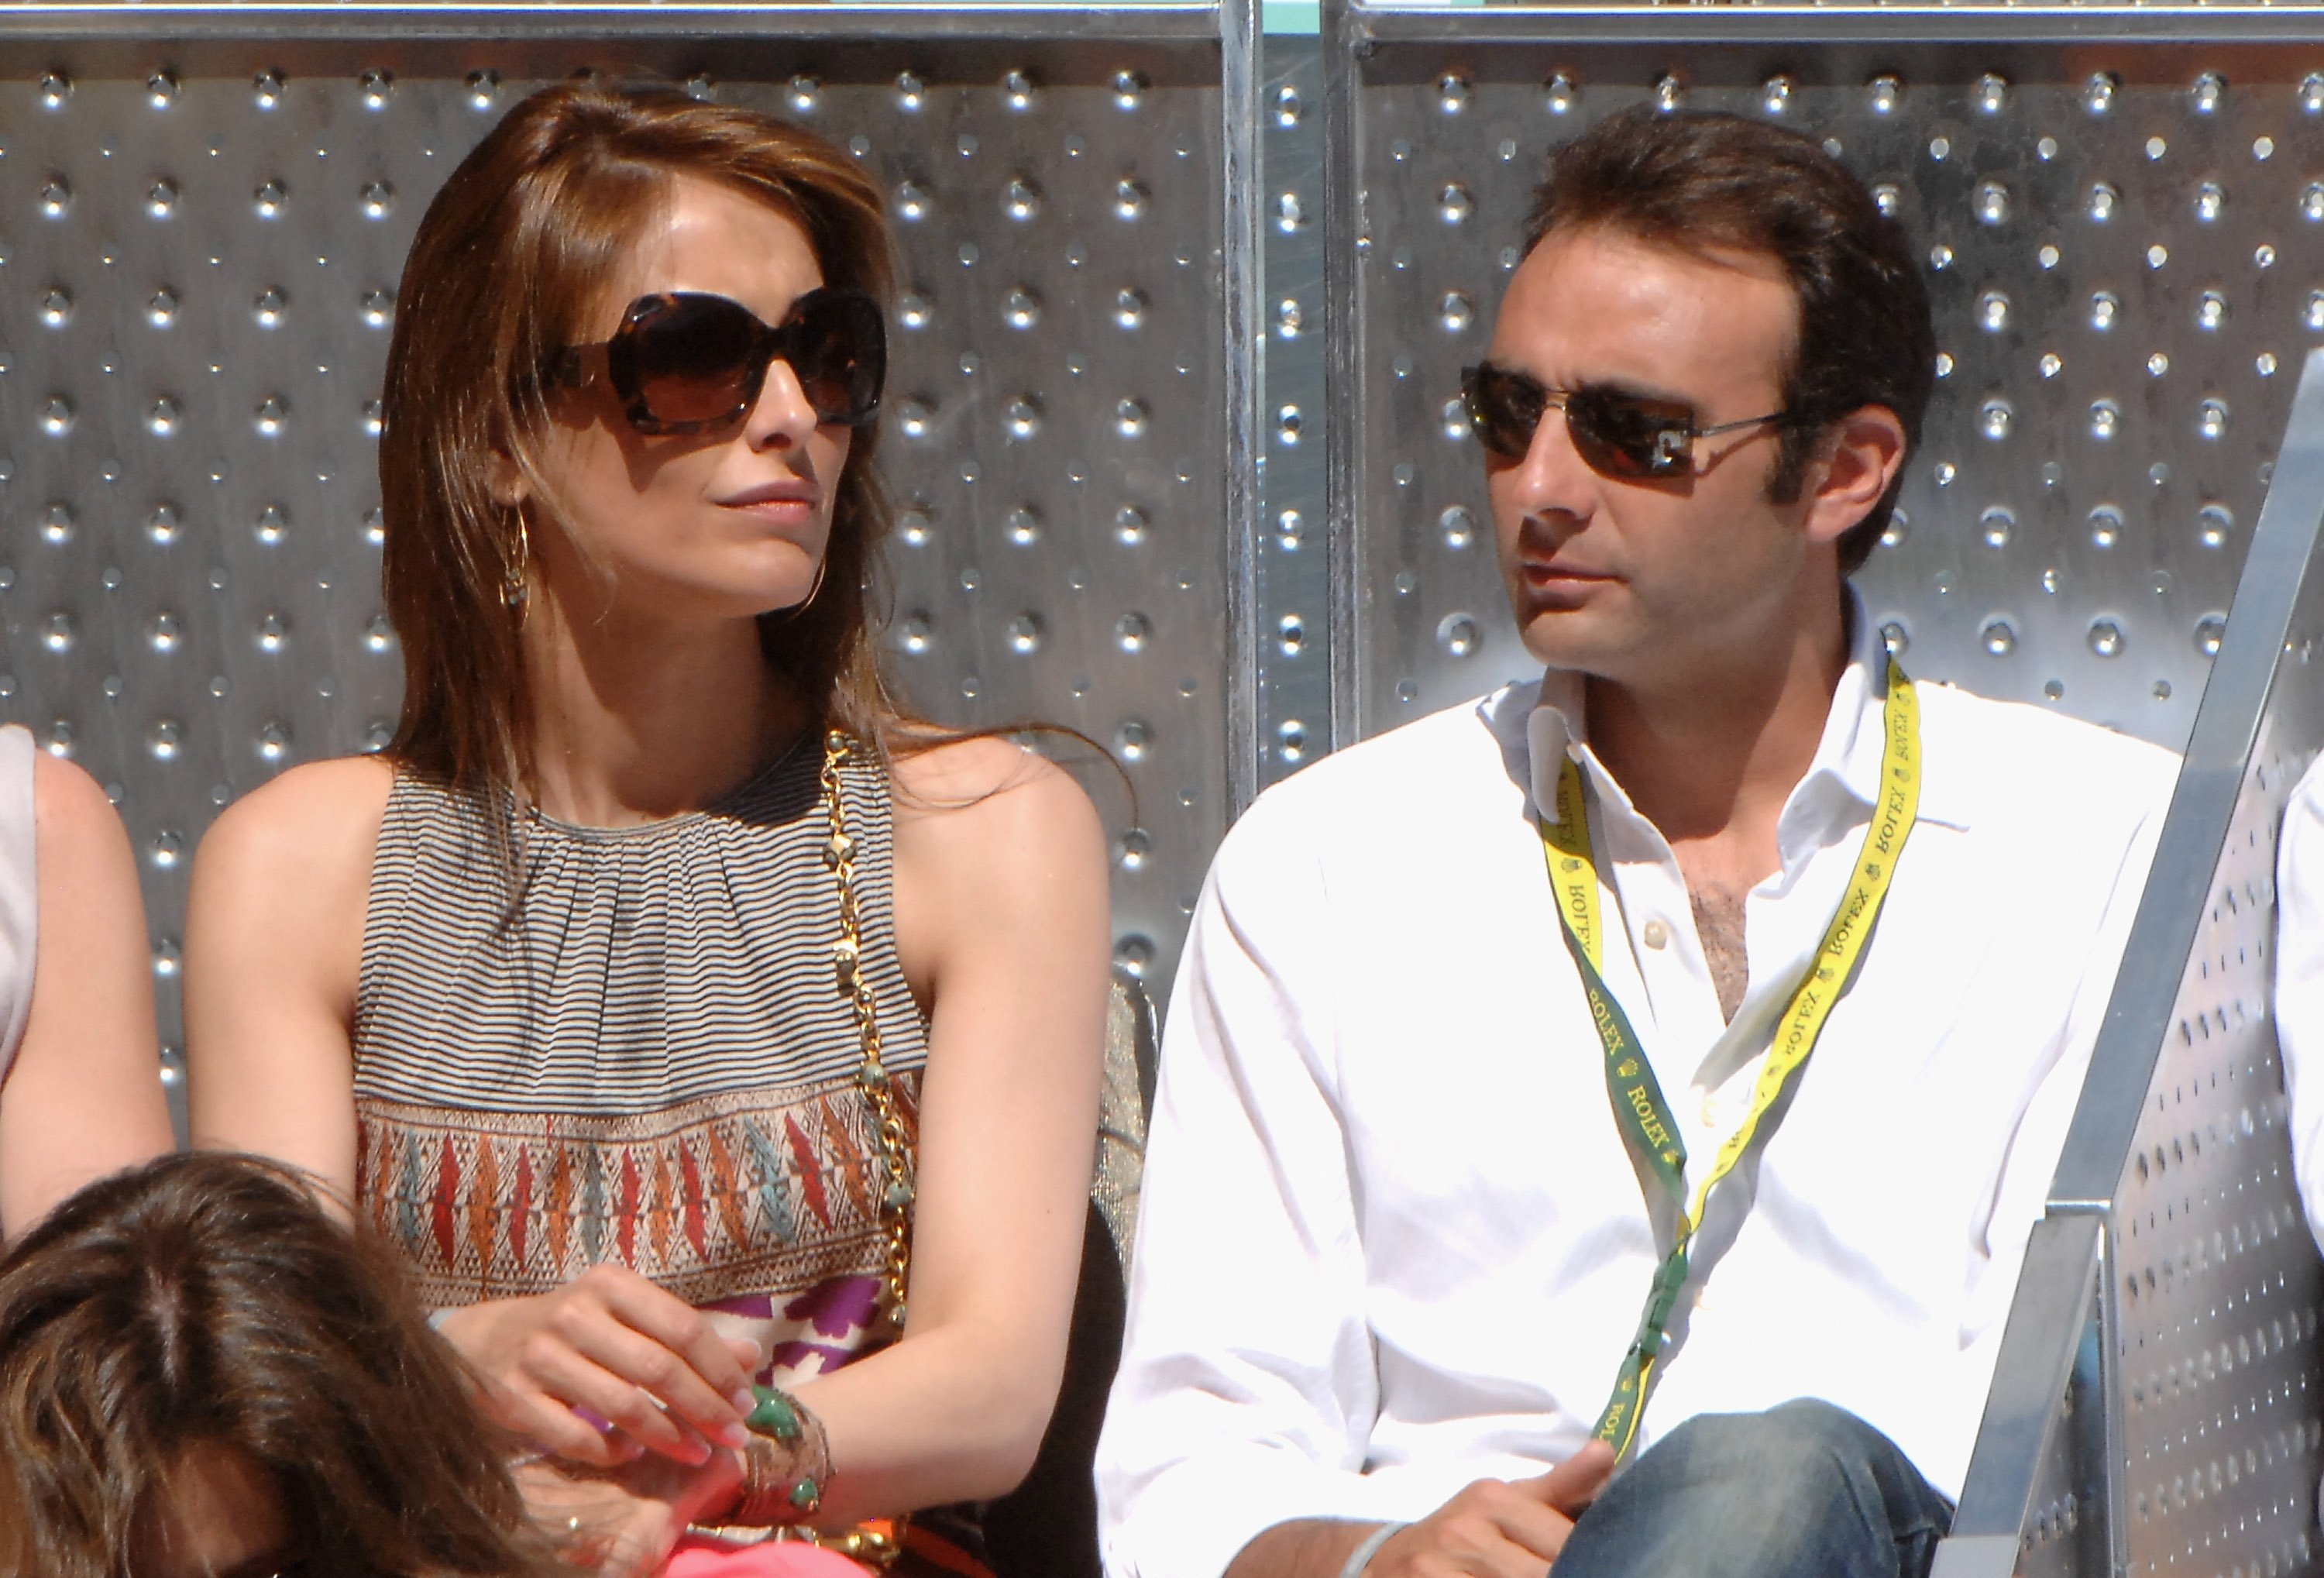 Paloma Cuevas y Enrique Ponce en la final del Abierto de Tenis de Madrid en mayo de 2009. | Foto: Getty Images